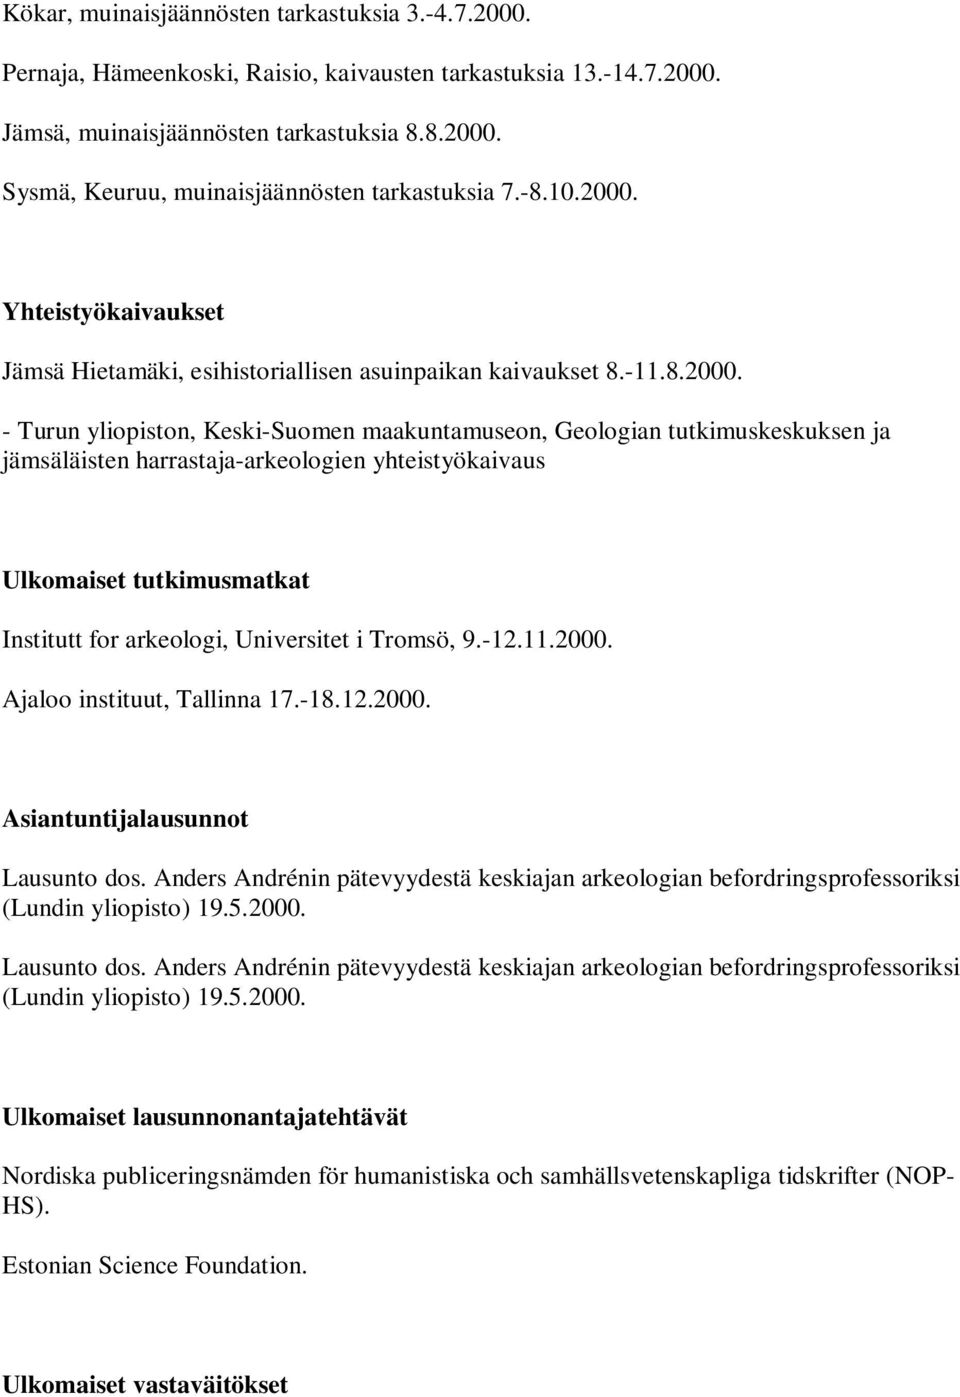 Yhteistyökaivaukset Jämsä Hietamäki, esihistoriallisen asuinpaikan kaivaukset 8.-11.8.2000.